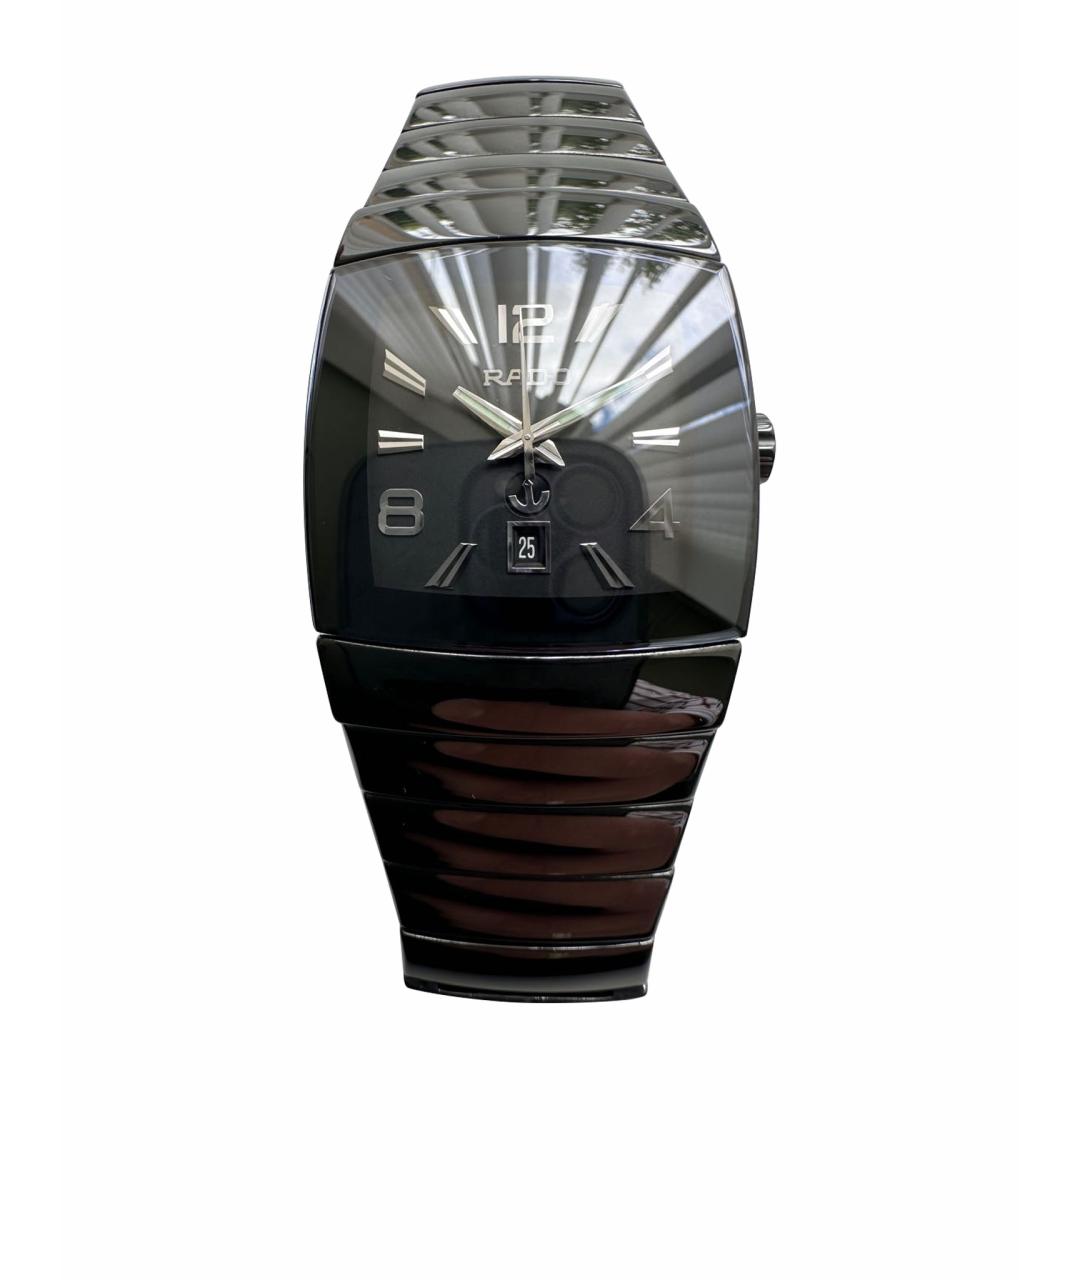 RADO Черные керамические часы, фото 1